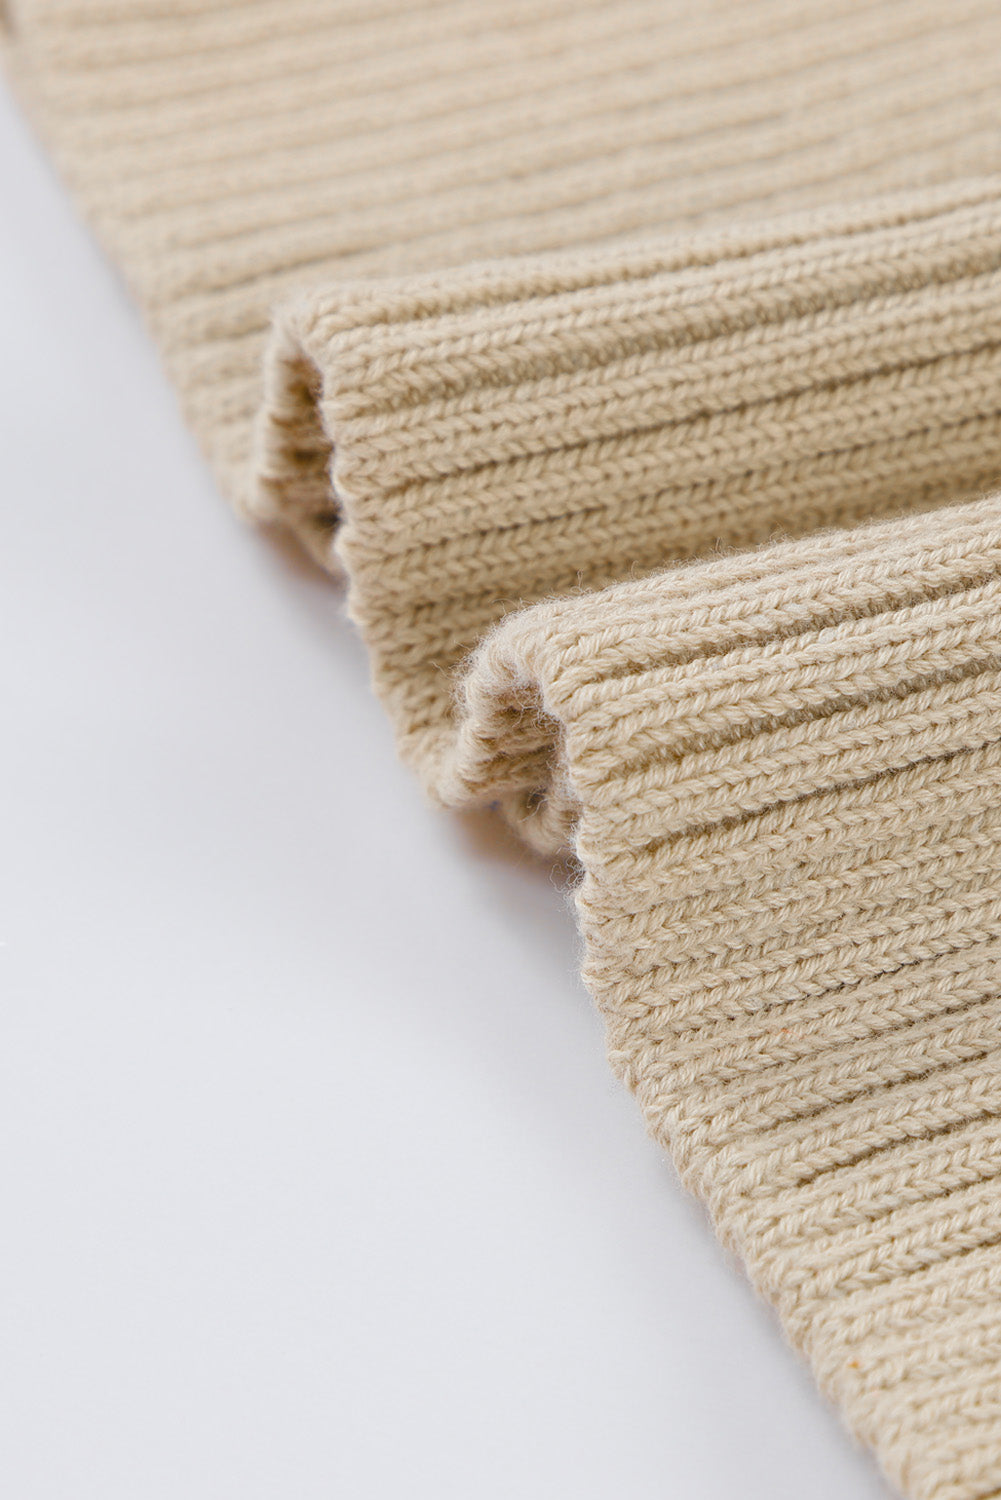 Maglione con maniche a sbuffo in maglia a costine a trecce color albicocca